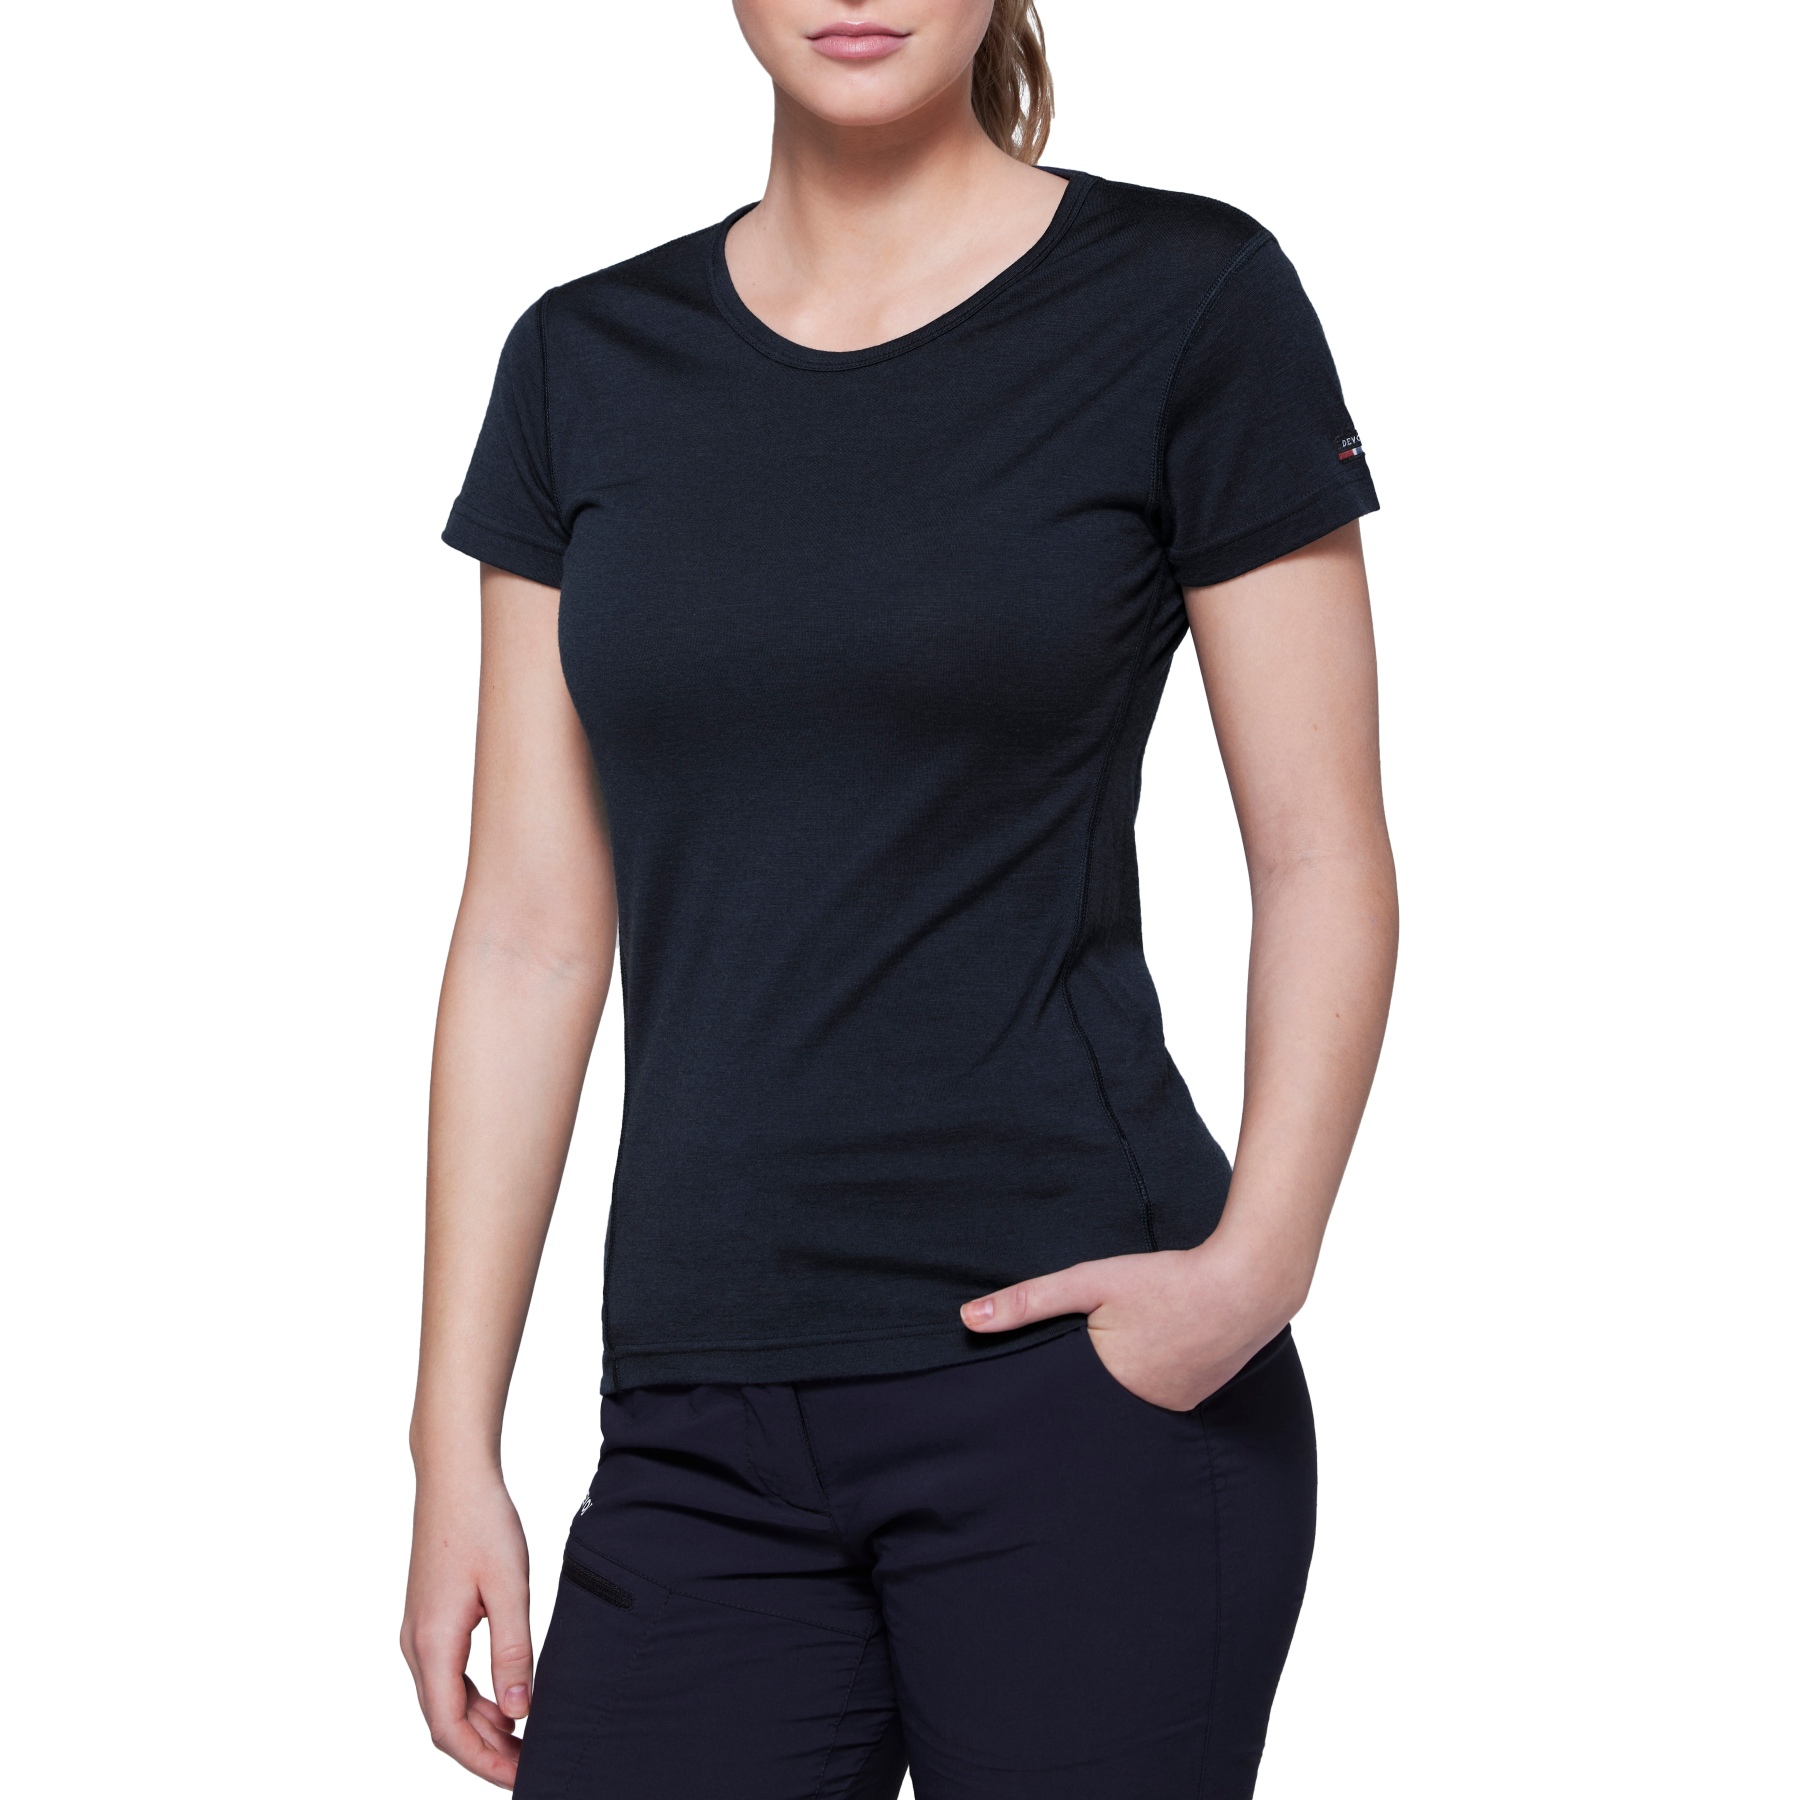 Produktbild von Devold Breeze Merino 150 T-Shirt Damen - 950 Schwarz